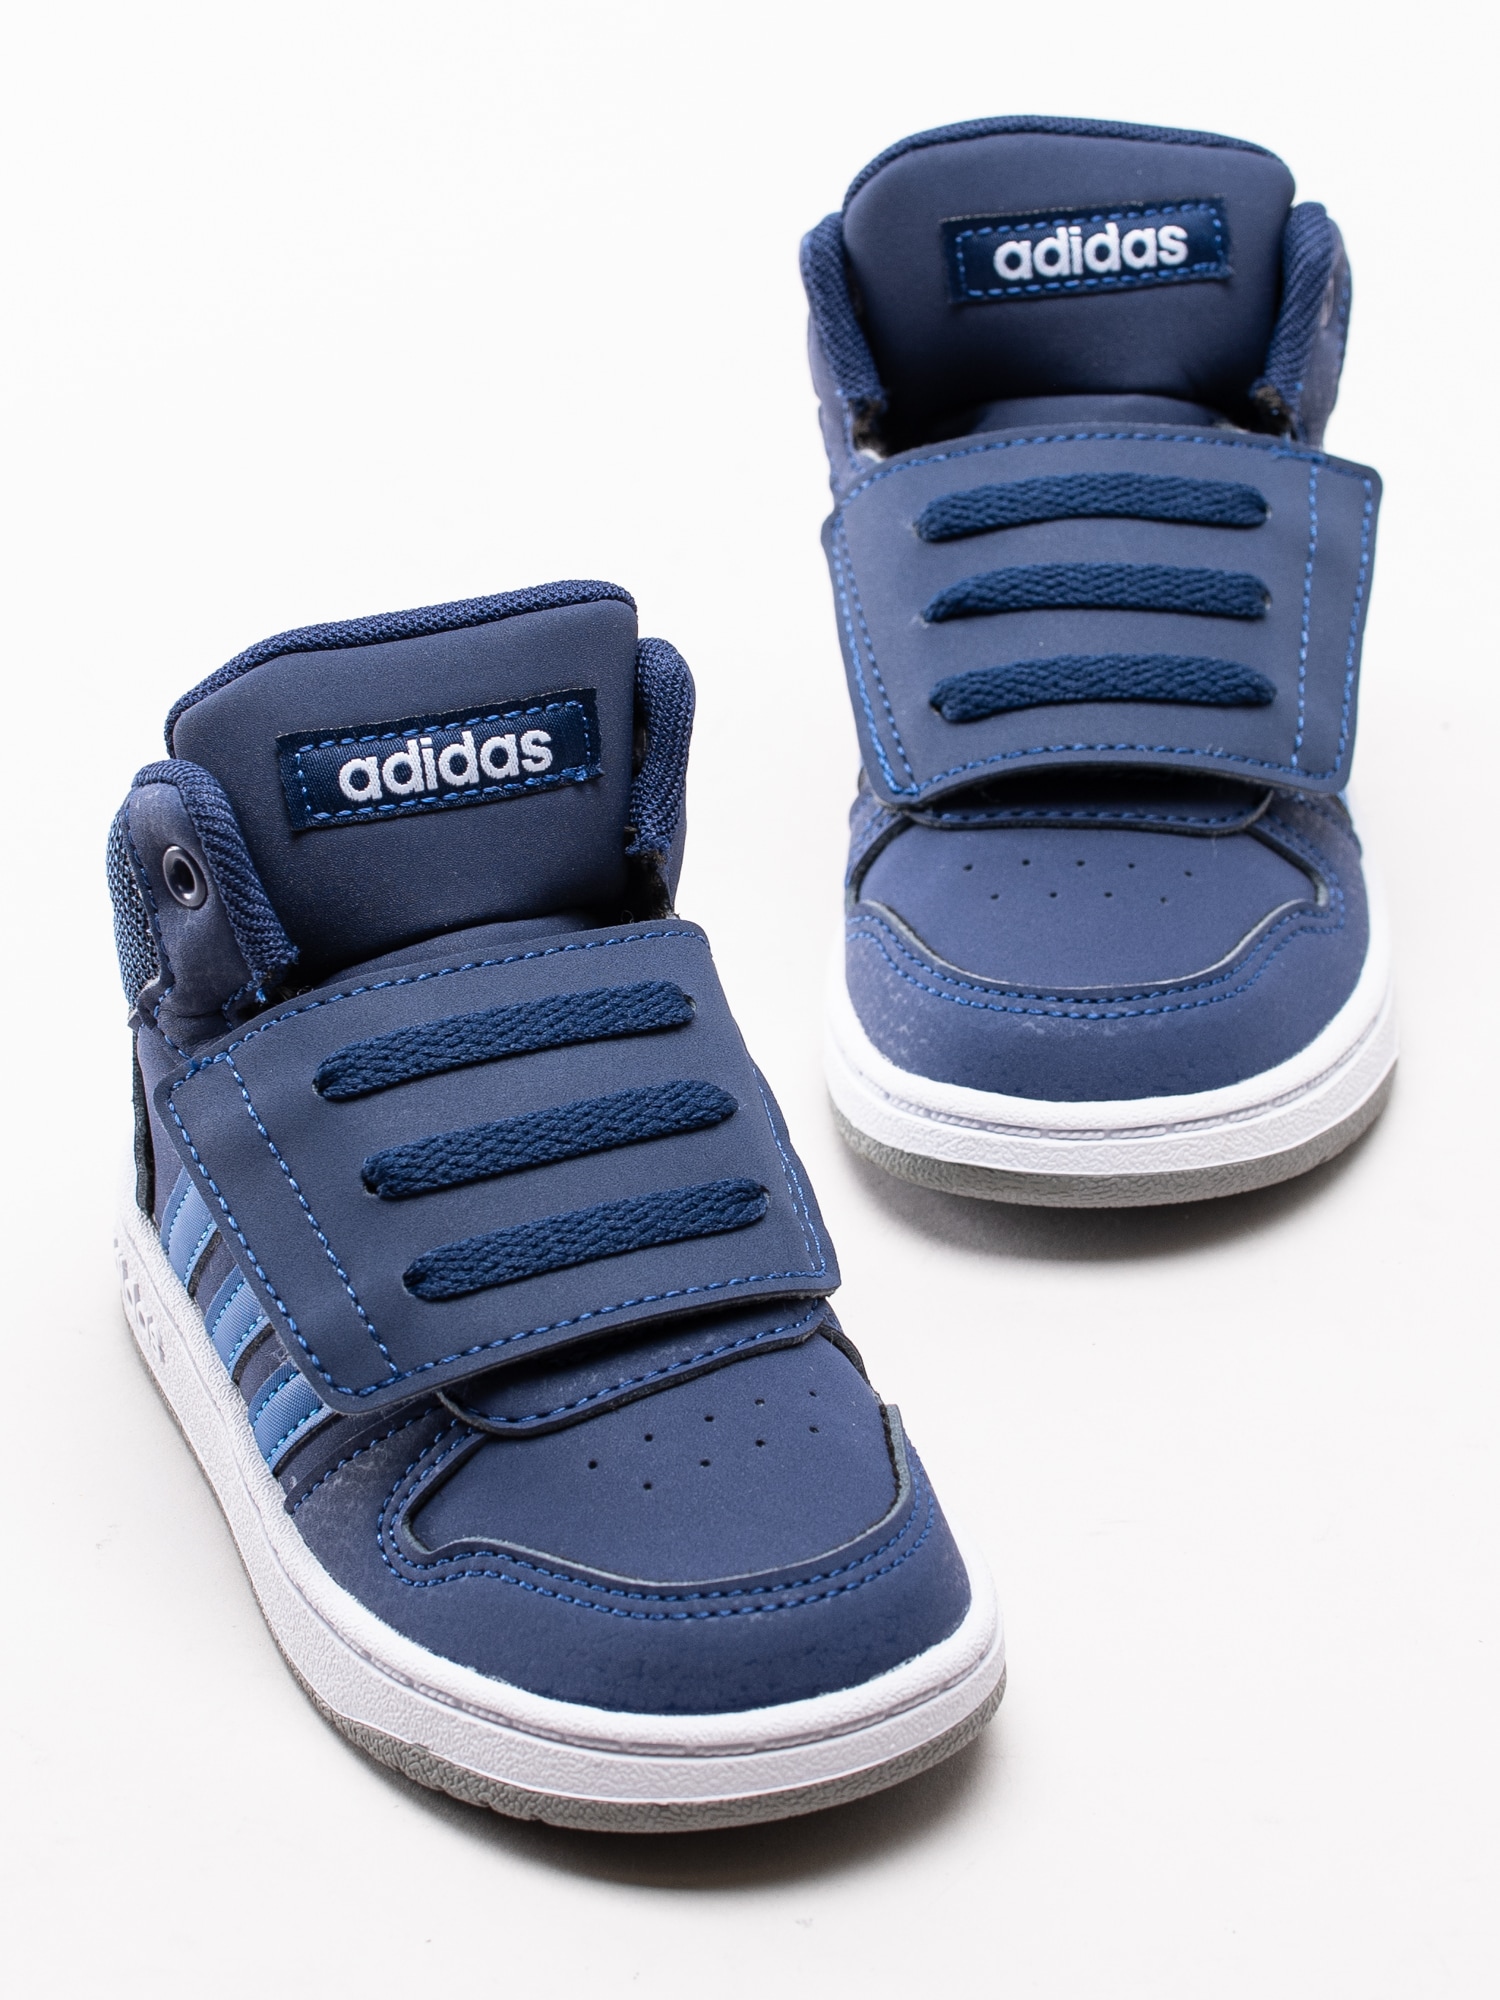 56193008 Adidas Hoops Mid 2.0 Infant EE6714 mörkblå höga sneakers för dem små med kardborre-6